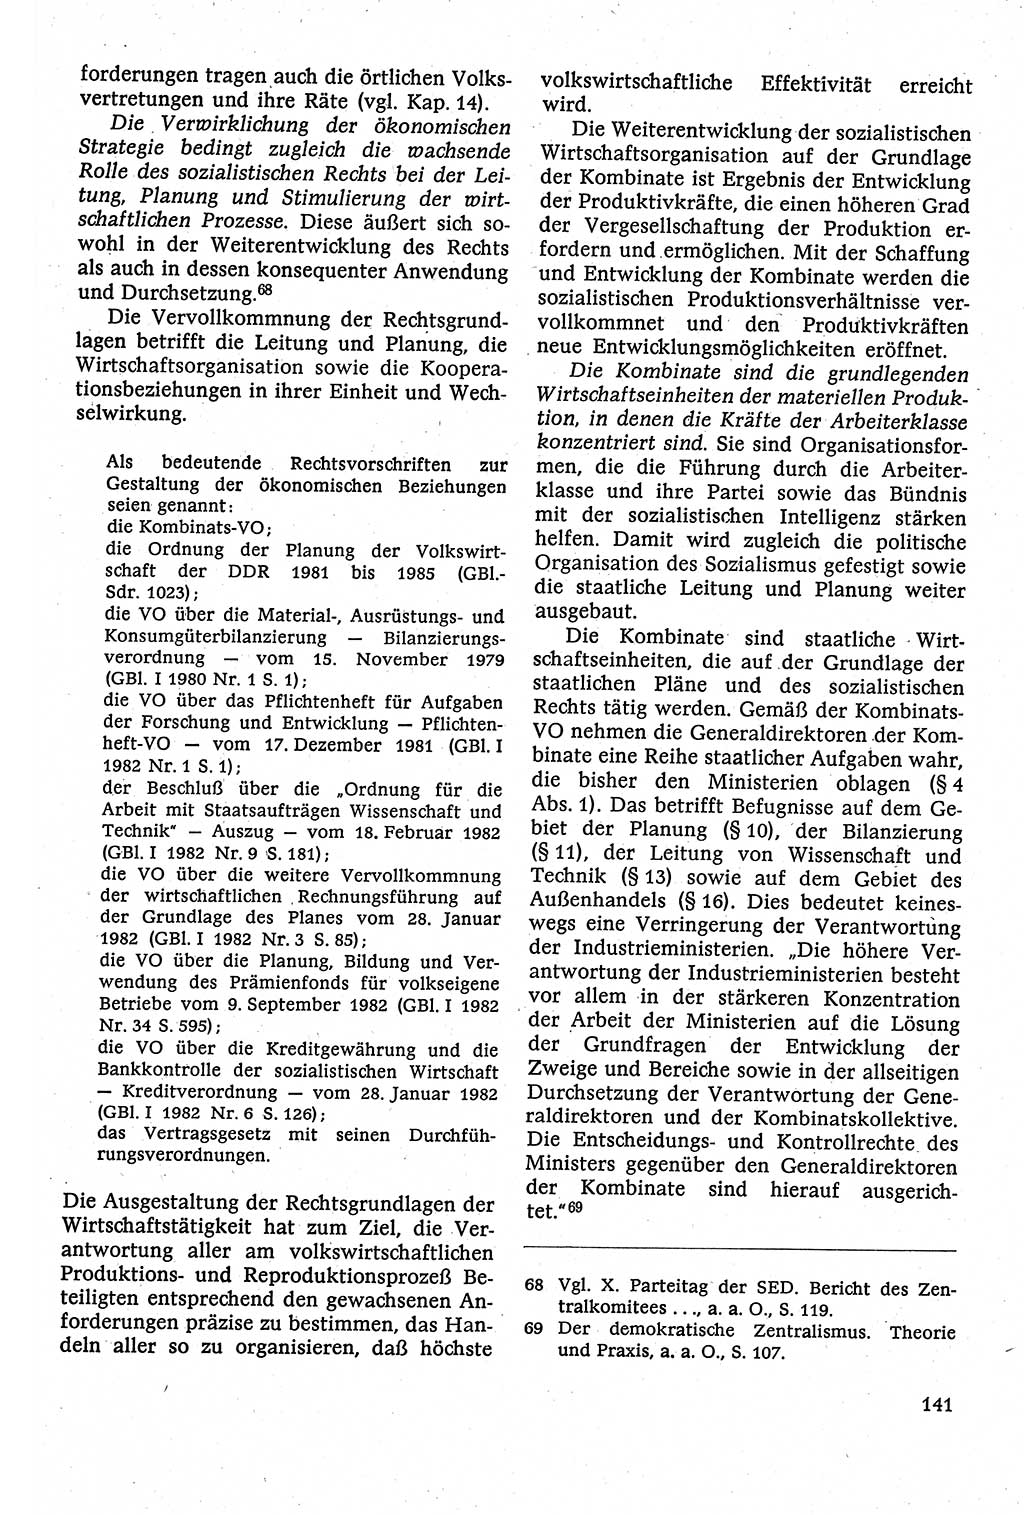 Staatsrecht der DDR [Deutsche Demokratische Republik (DDR)], Lehrbuch 1984, Seite 141 (St.-R. DDR Lb. 1984, S. 141)